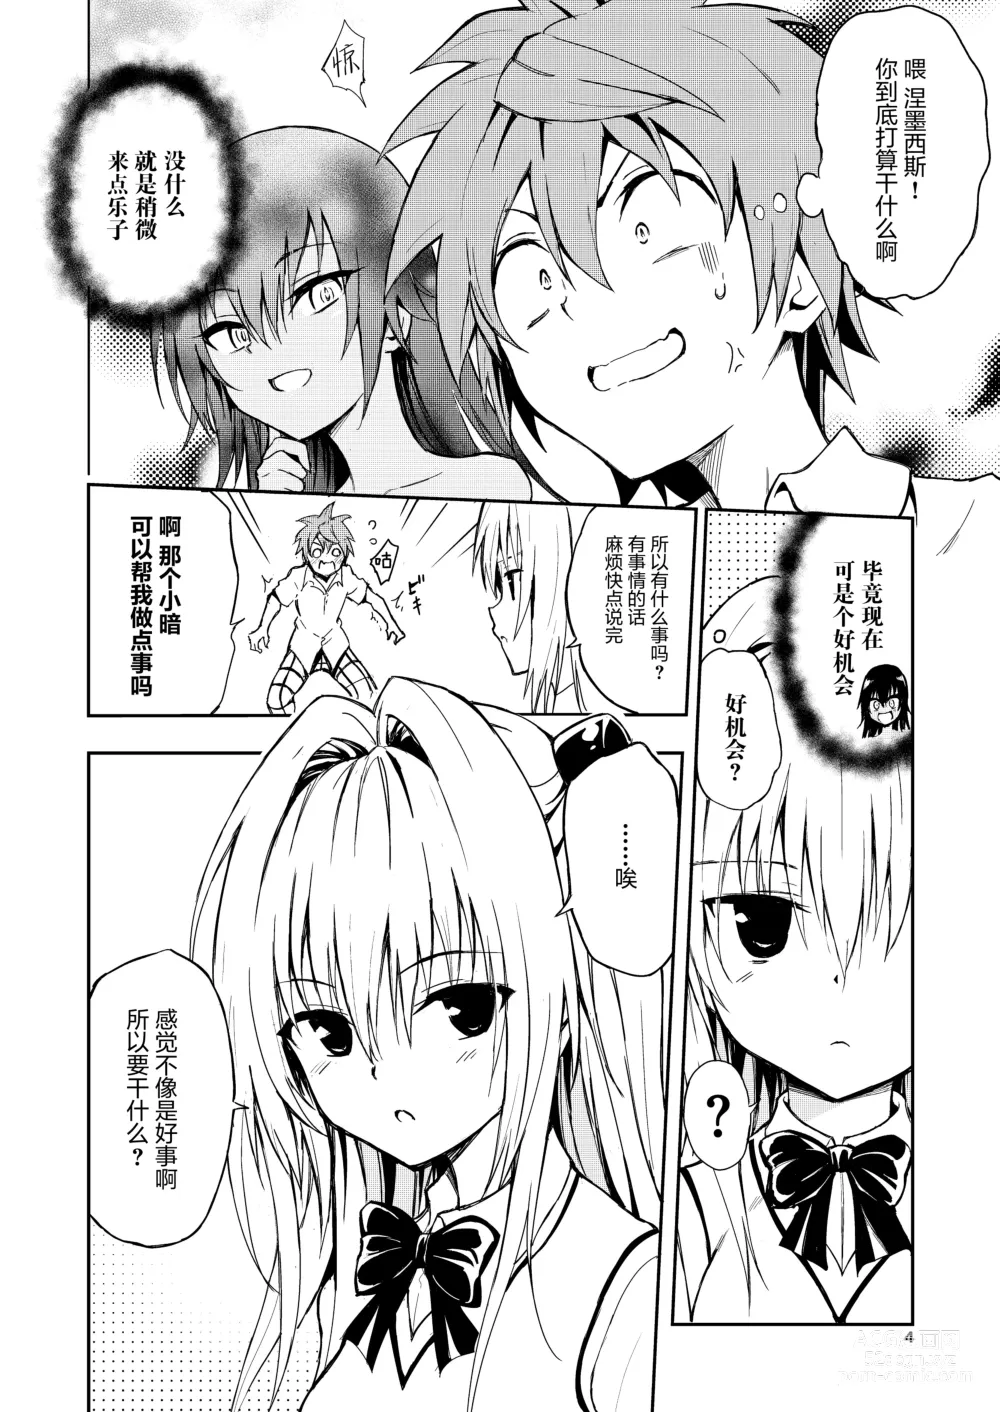 Page 5 of doujinshi Ecchii no wa Kirai desu ka?